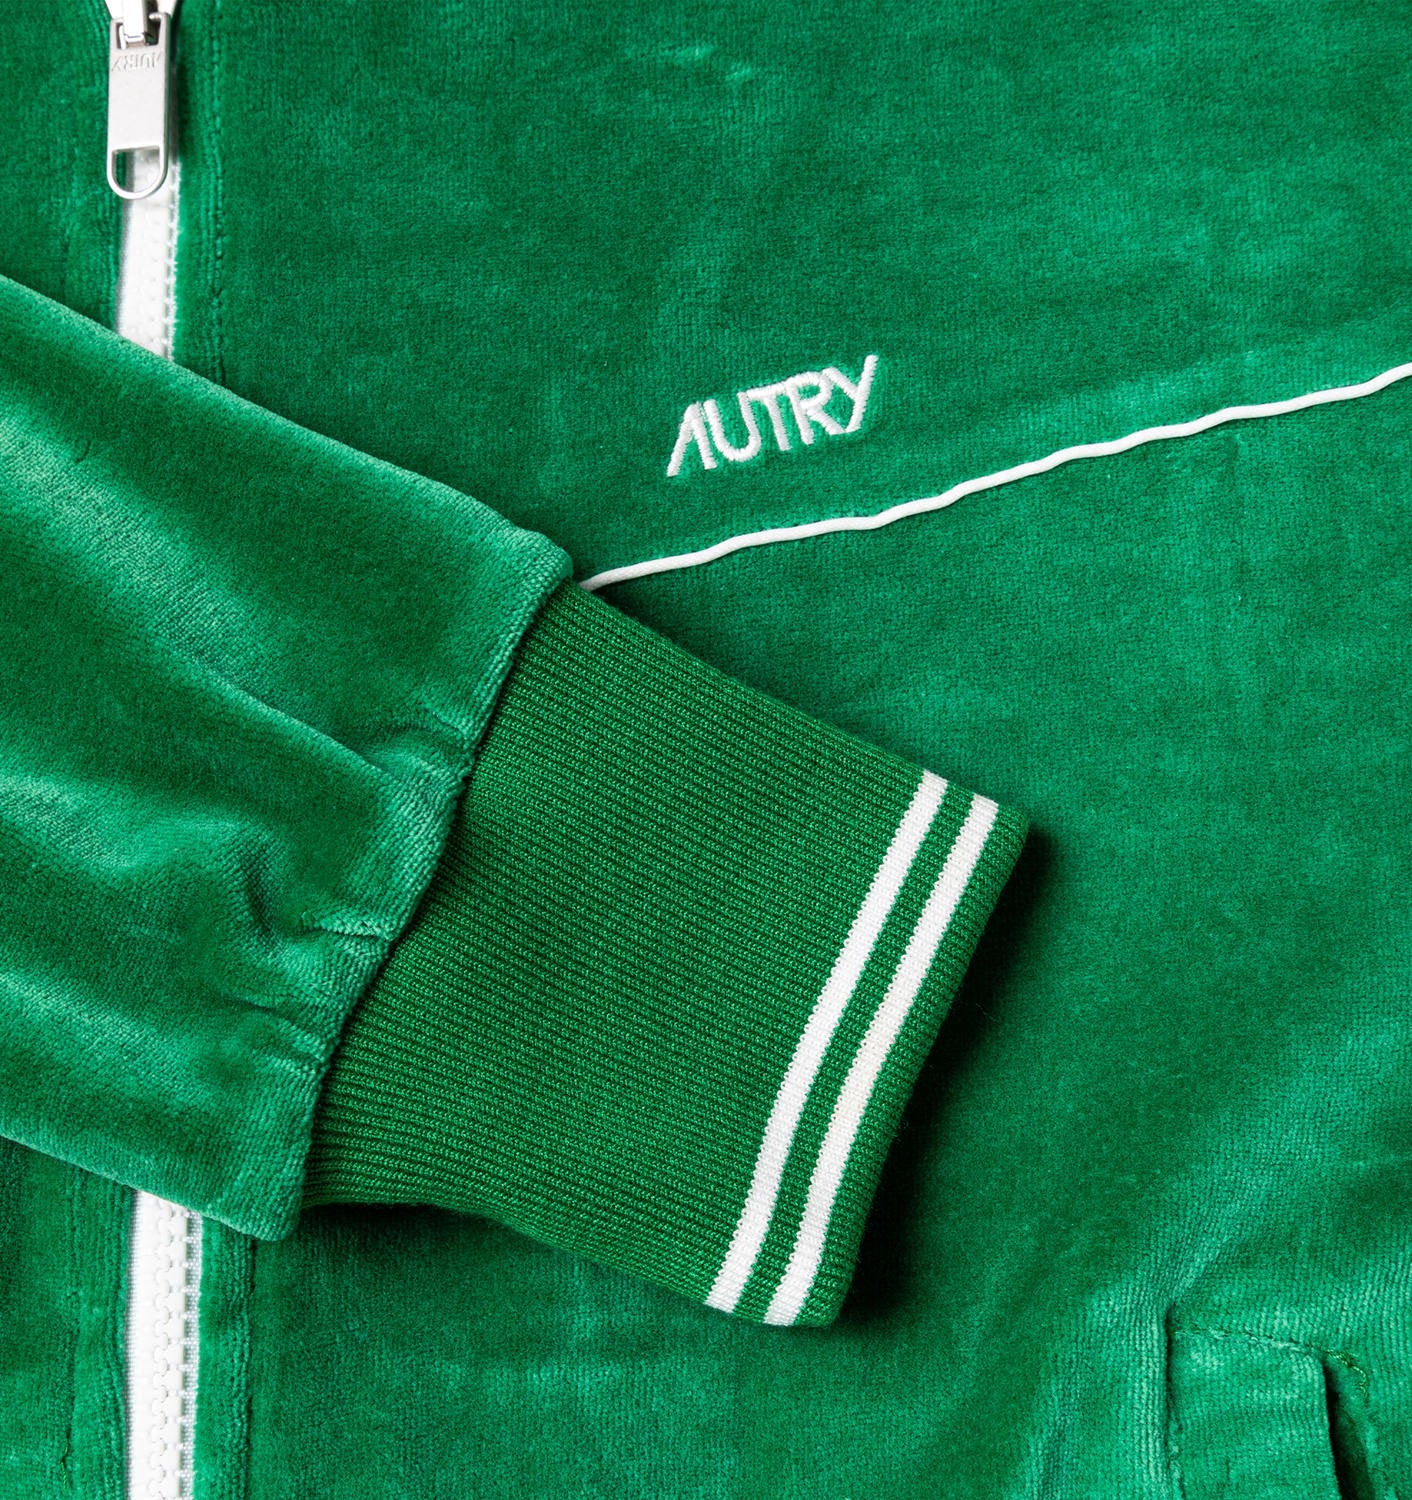 Autry Wear/Sweatsweater Woman Zip Green Emerald